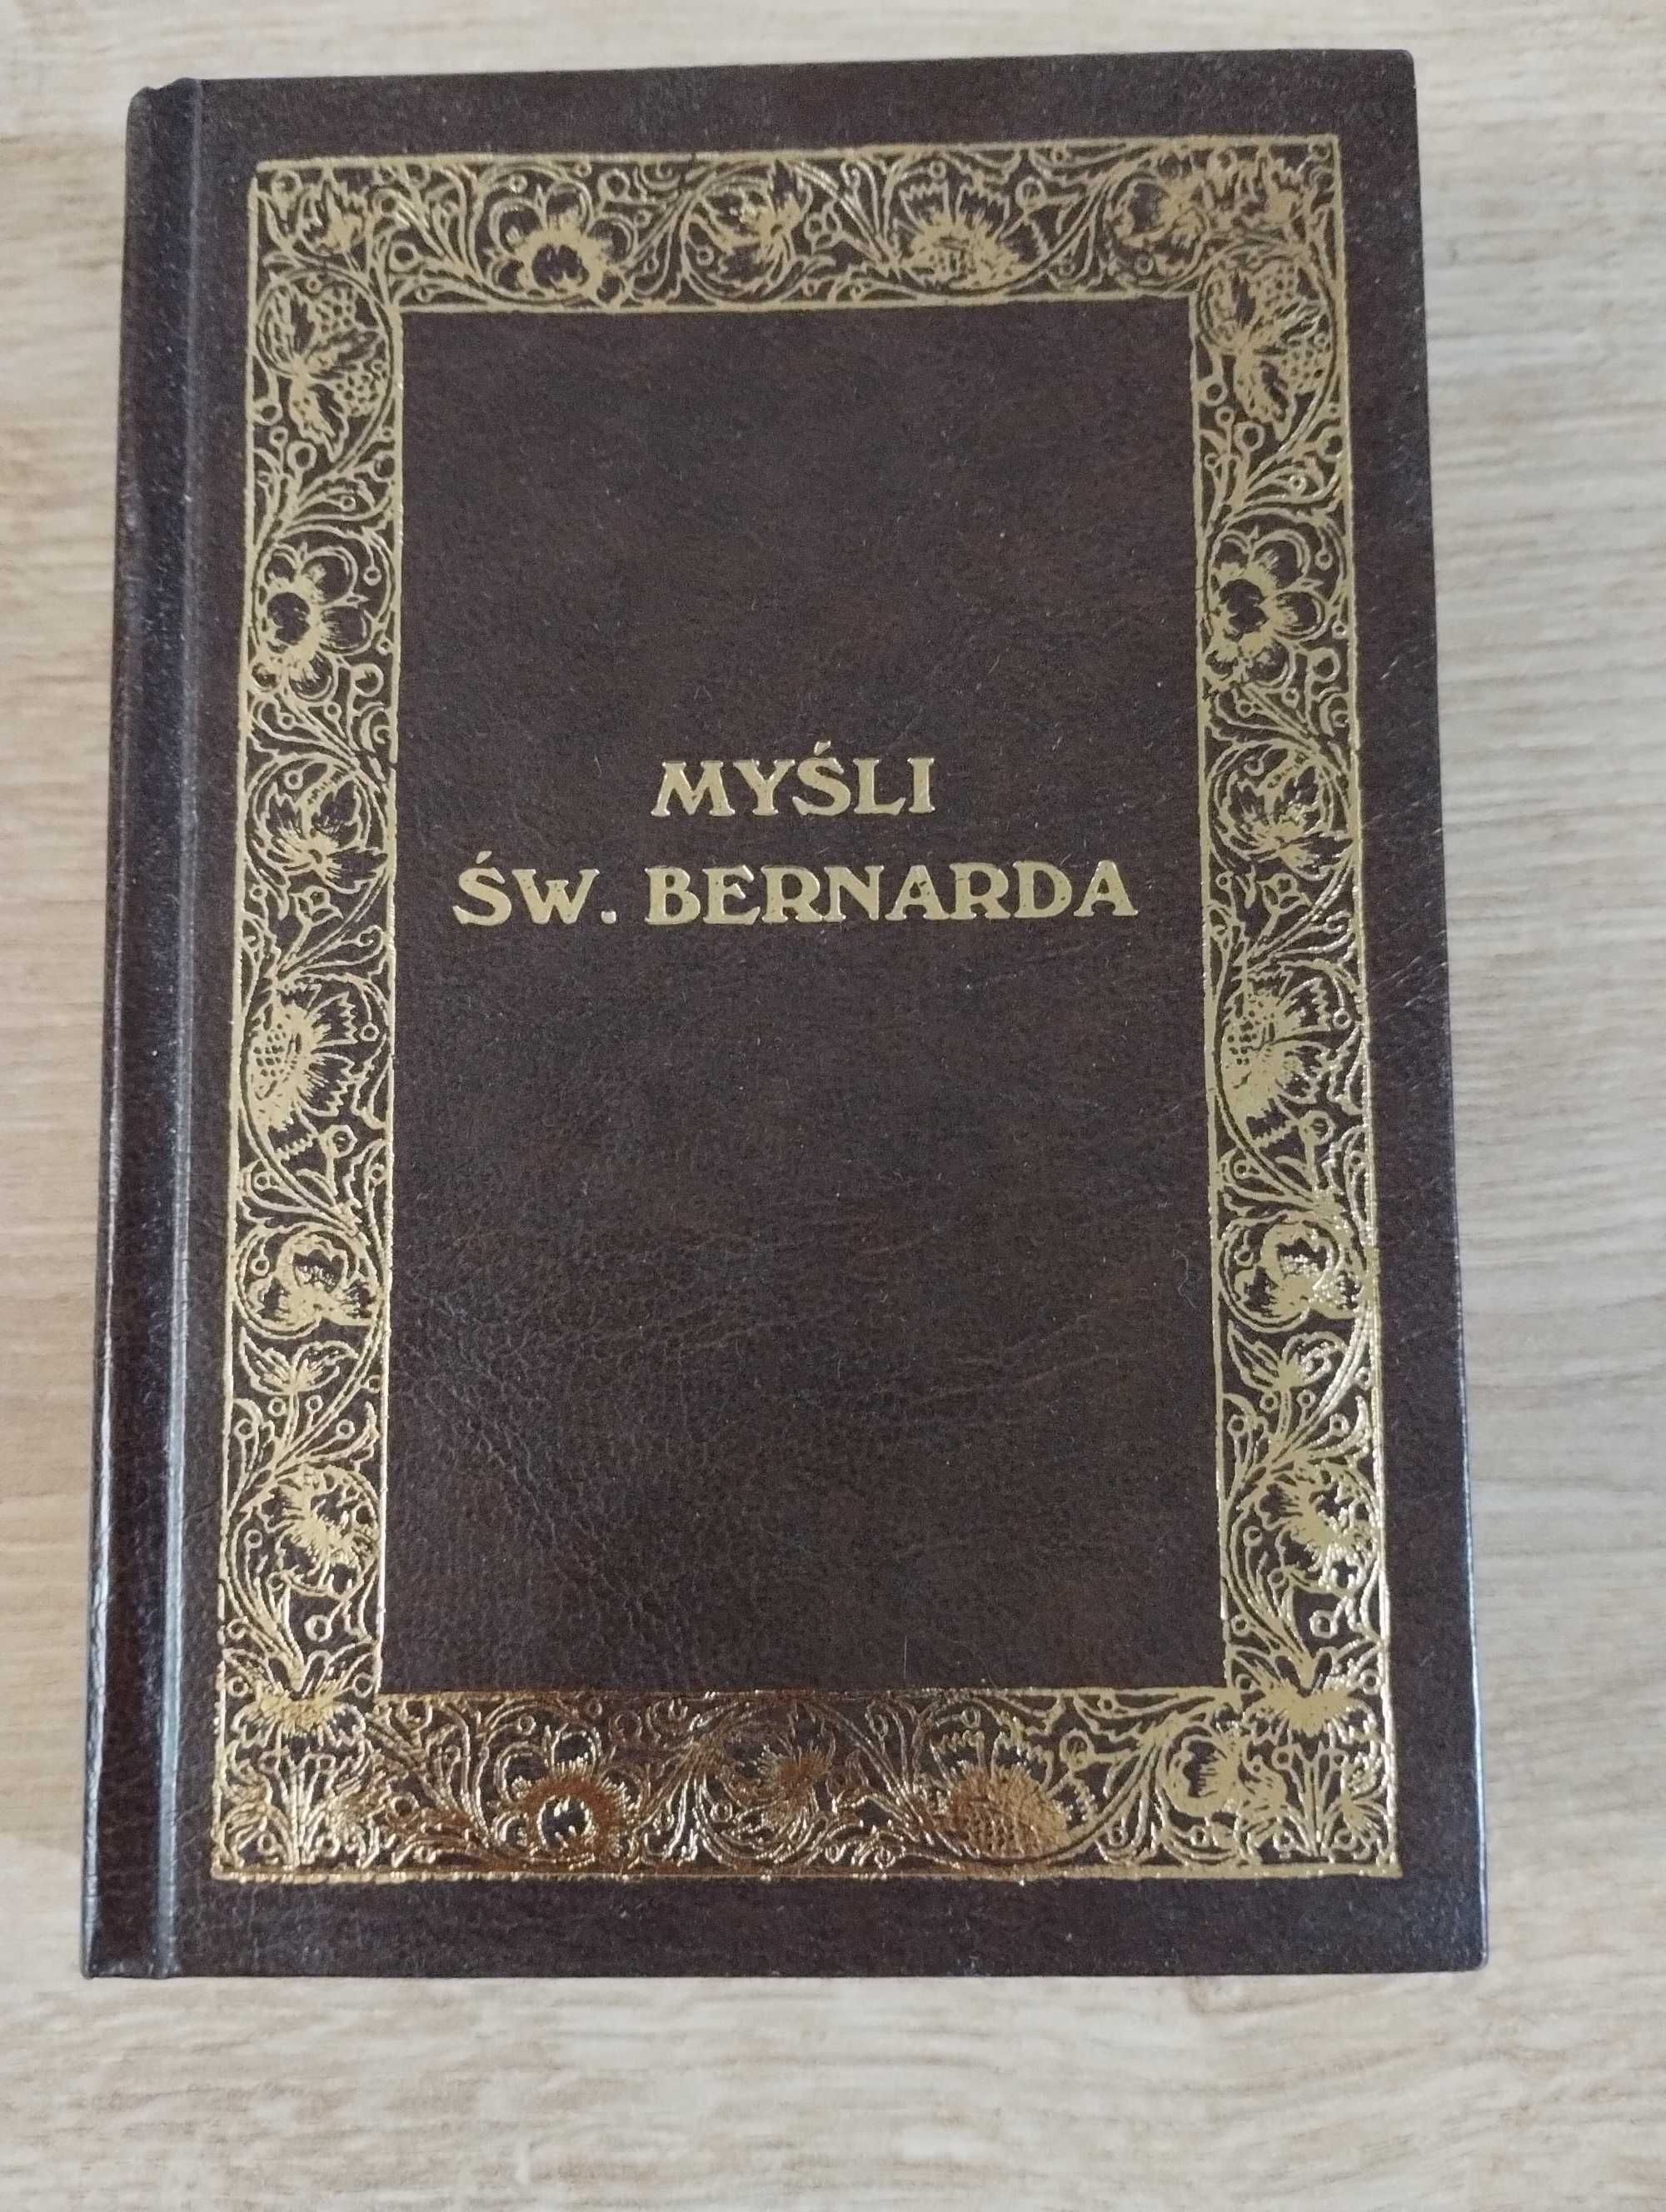 Myśli św. Bernarda Pachucki reprint z 1935 twarda